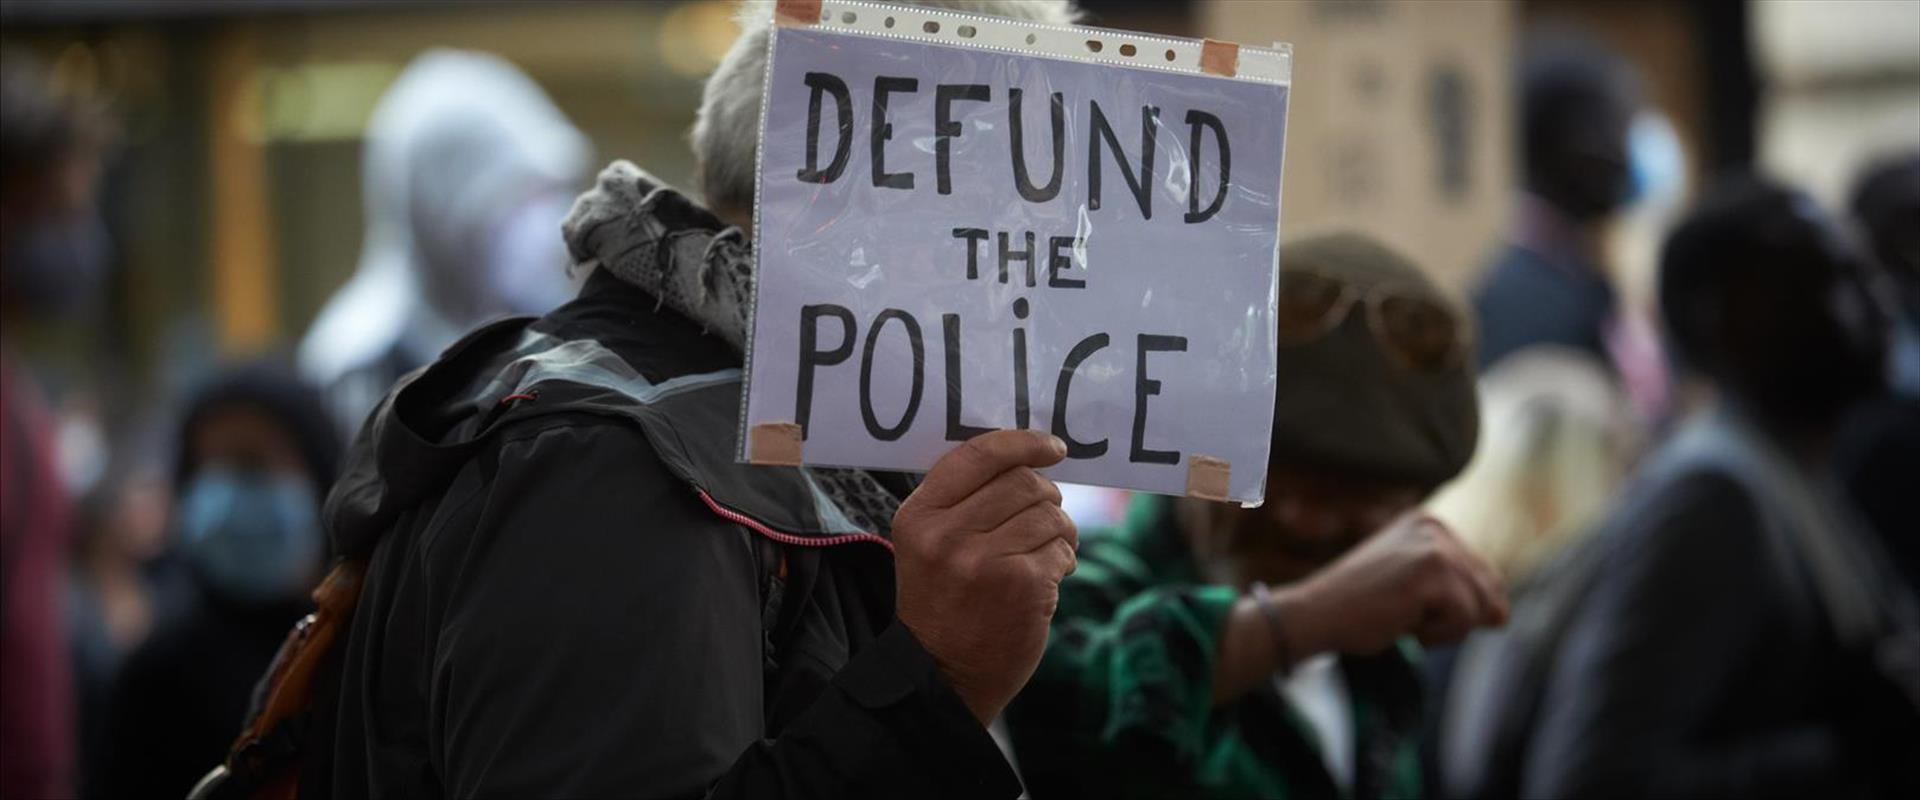 הפגנה נגד המשטרה בארה"ב